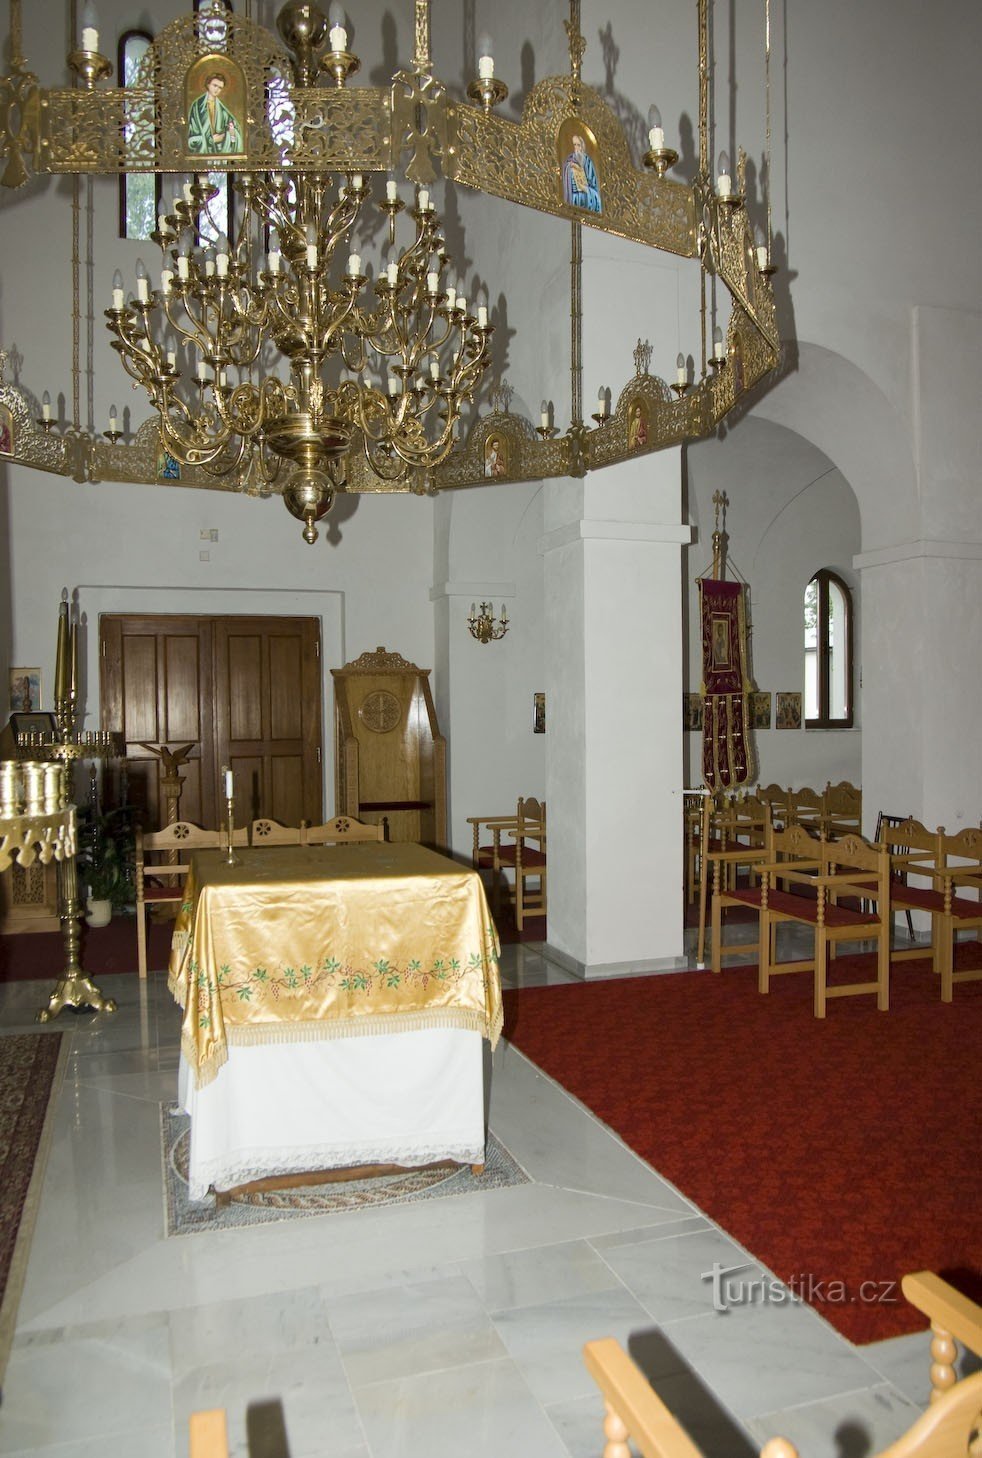 Šumperk - igreja de St. Espírito